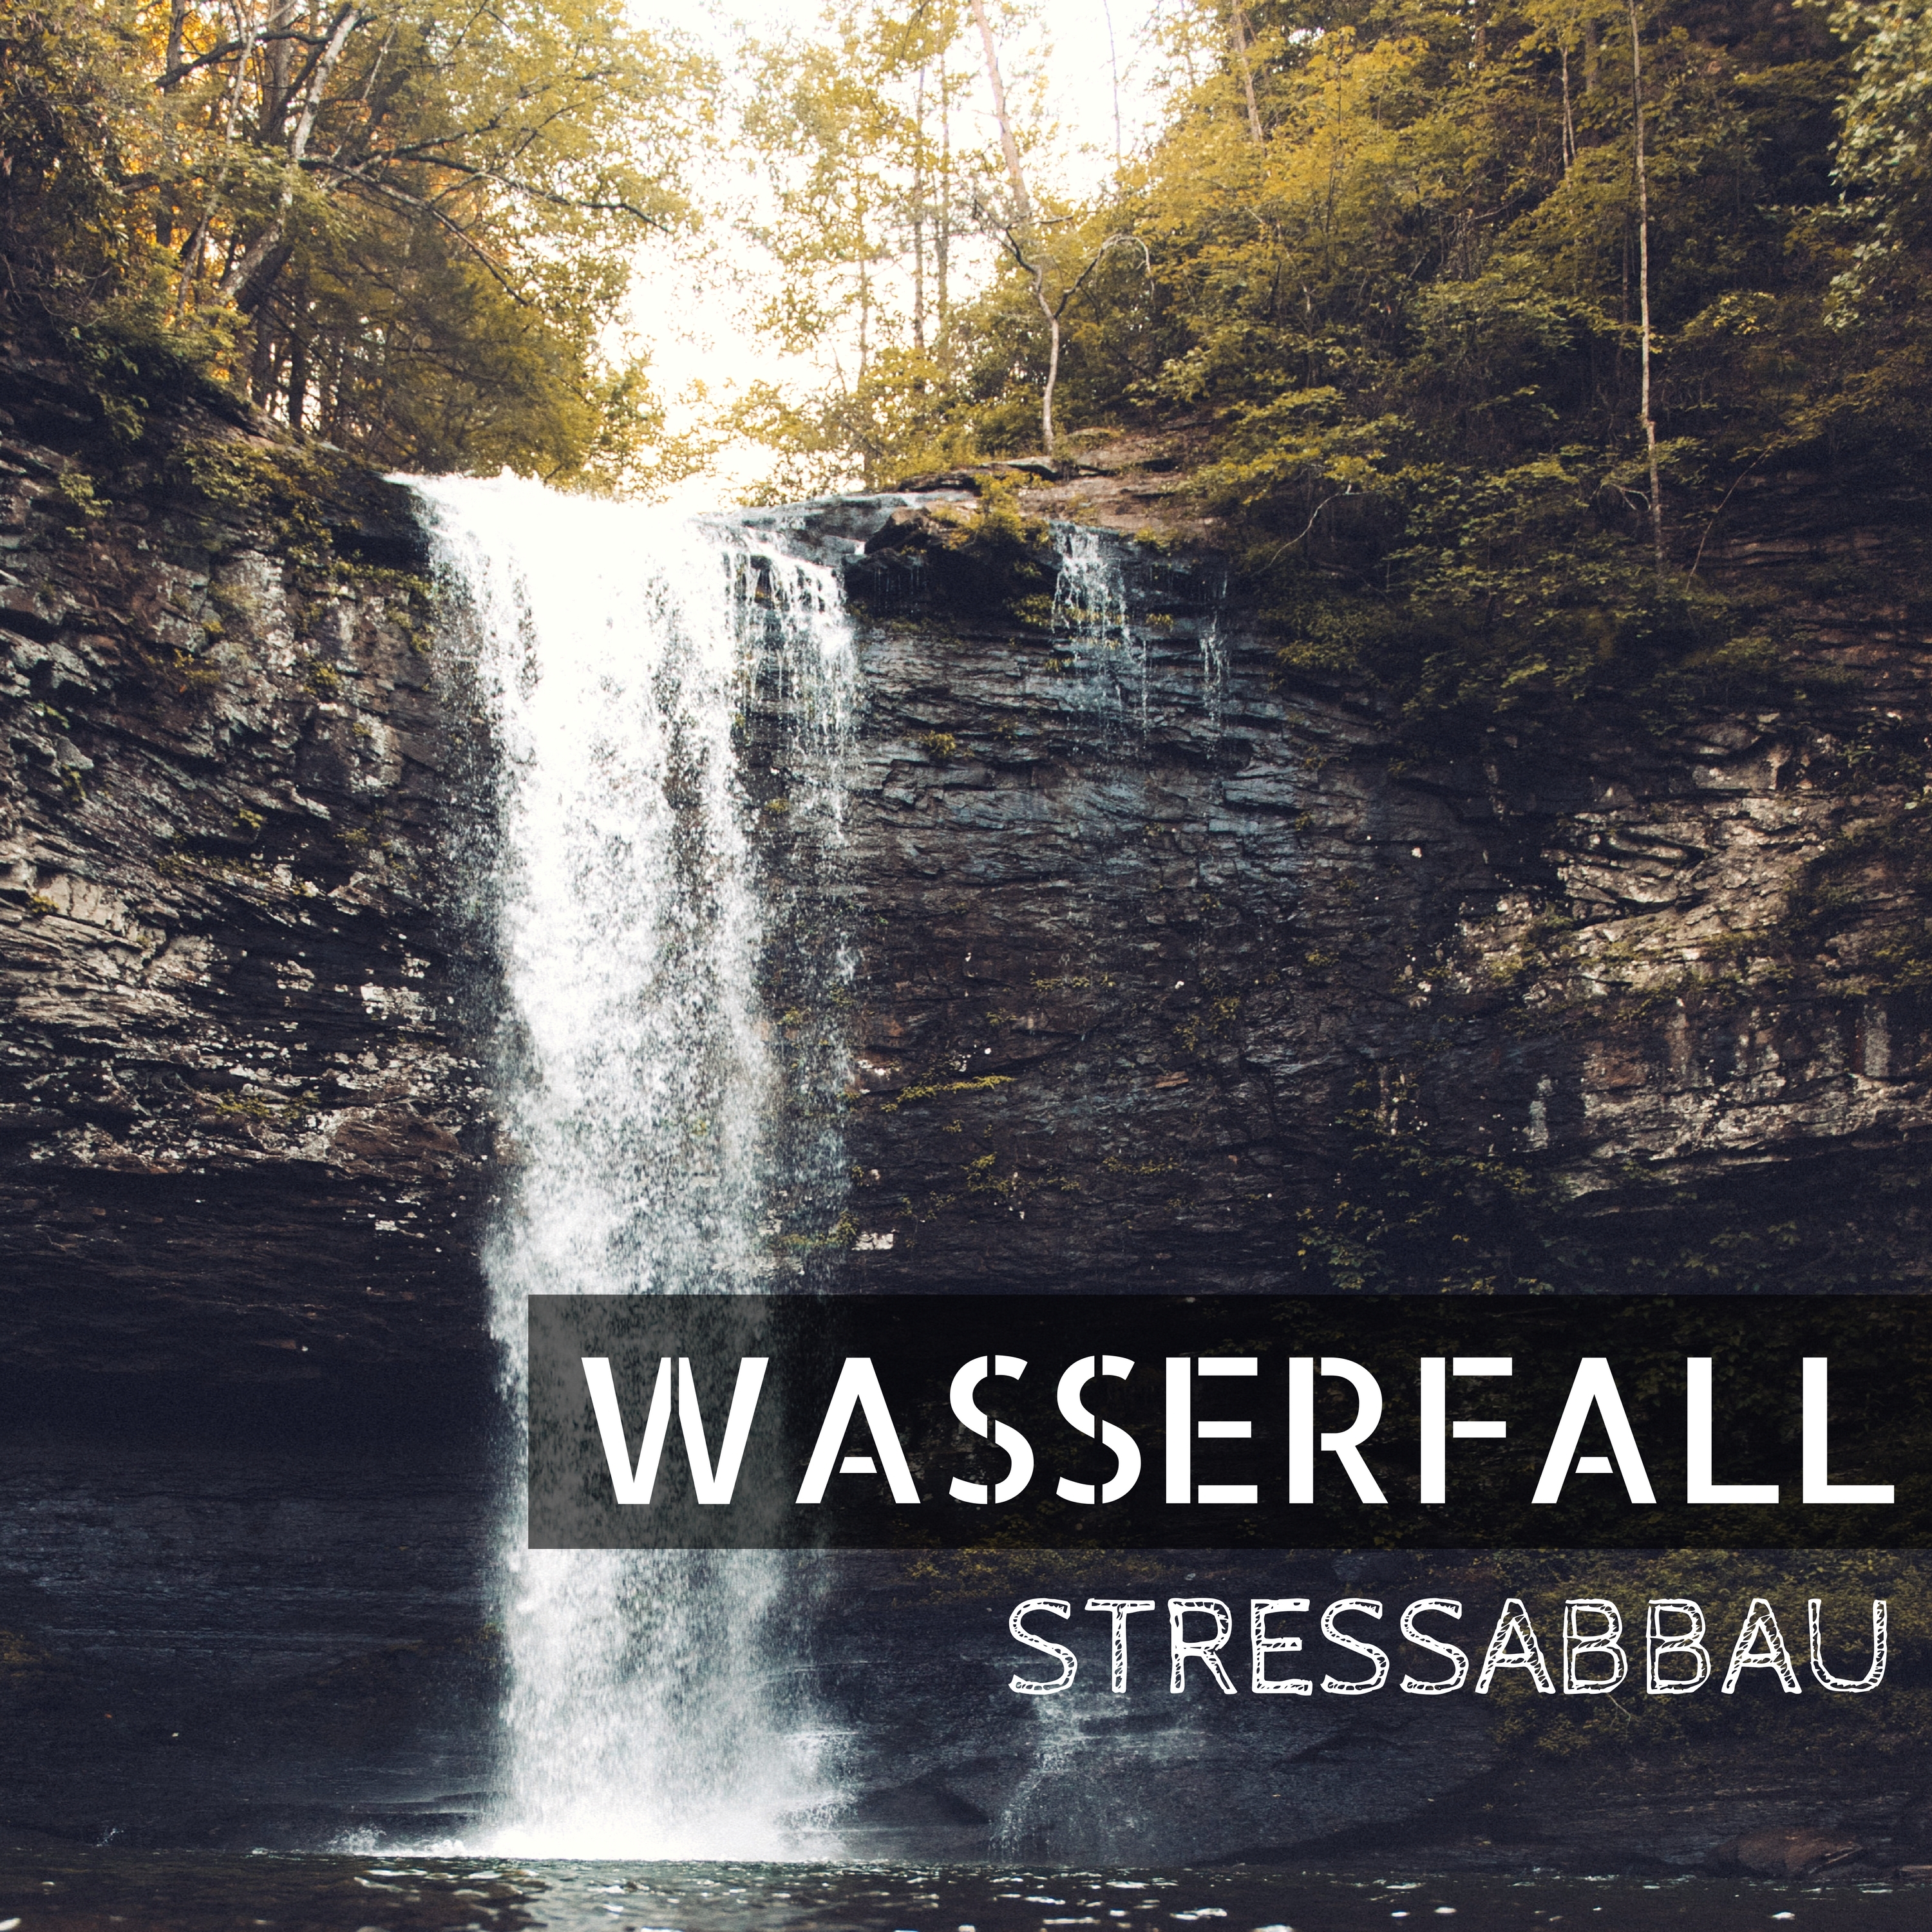 Wasserfall Stressabbau - Heilende Meer Meditationsmusik, Einschlaf Musik zum Entspannen